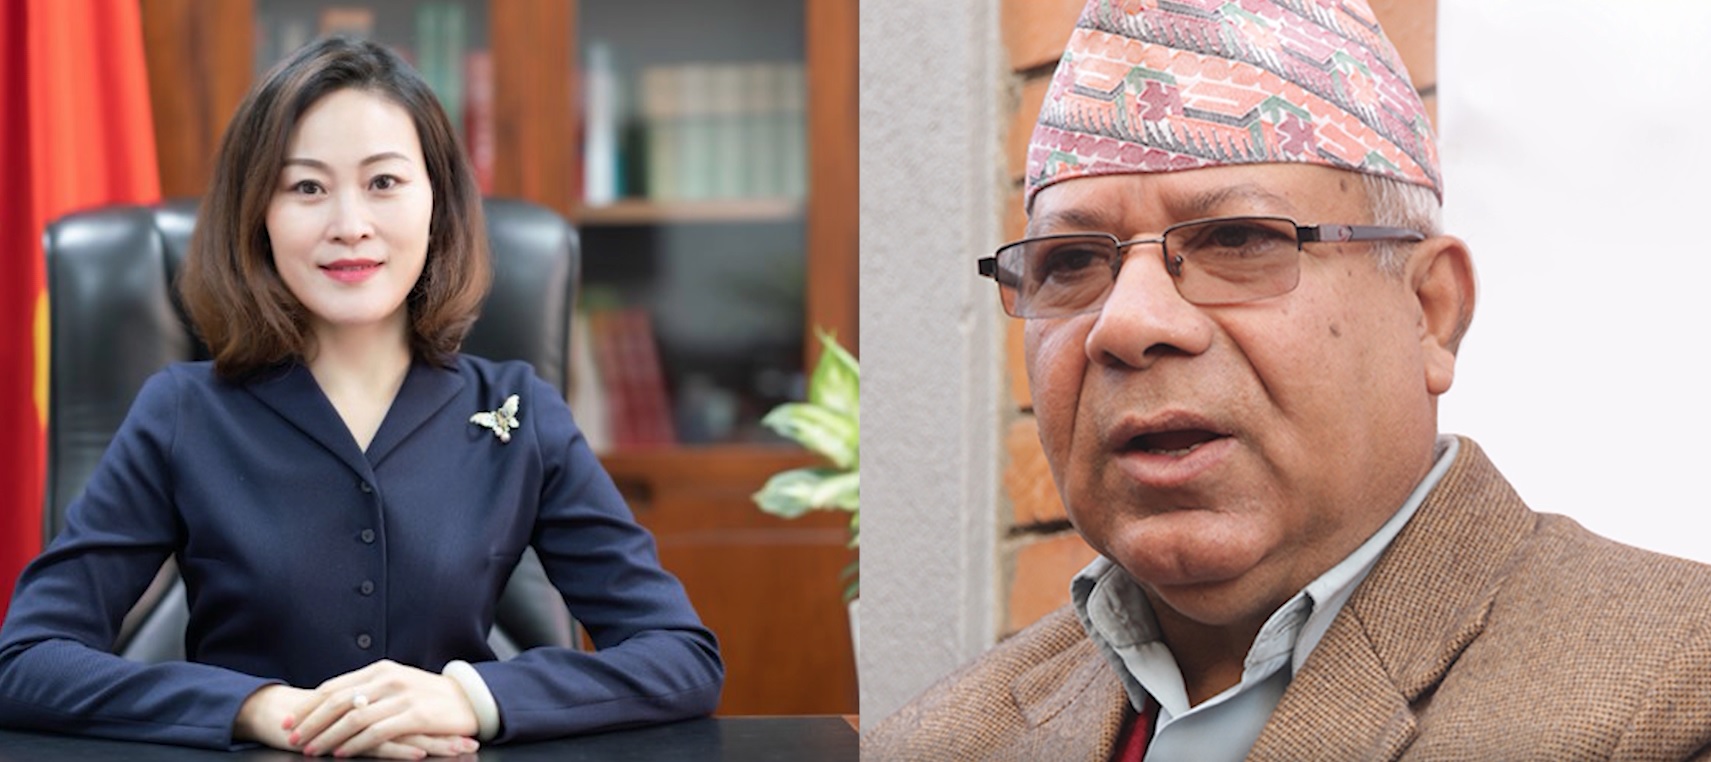 नेकपाभित्र शक्ति संघर्ष उत्कर्षमा पुगेका बेला नेता नेपाल र चिनियाँ राजदूतबीच भेट